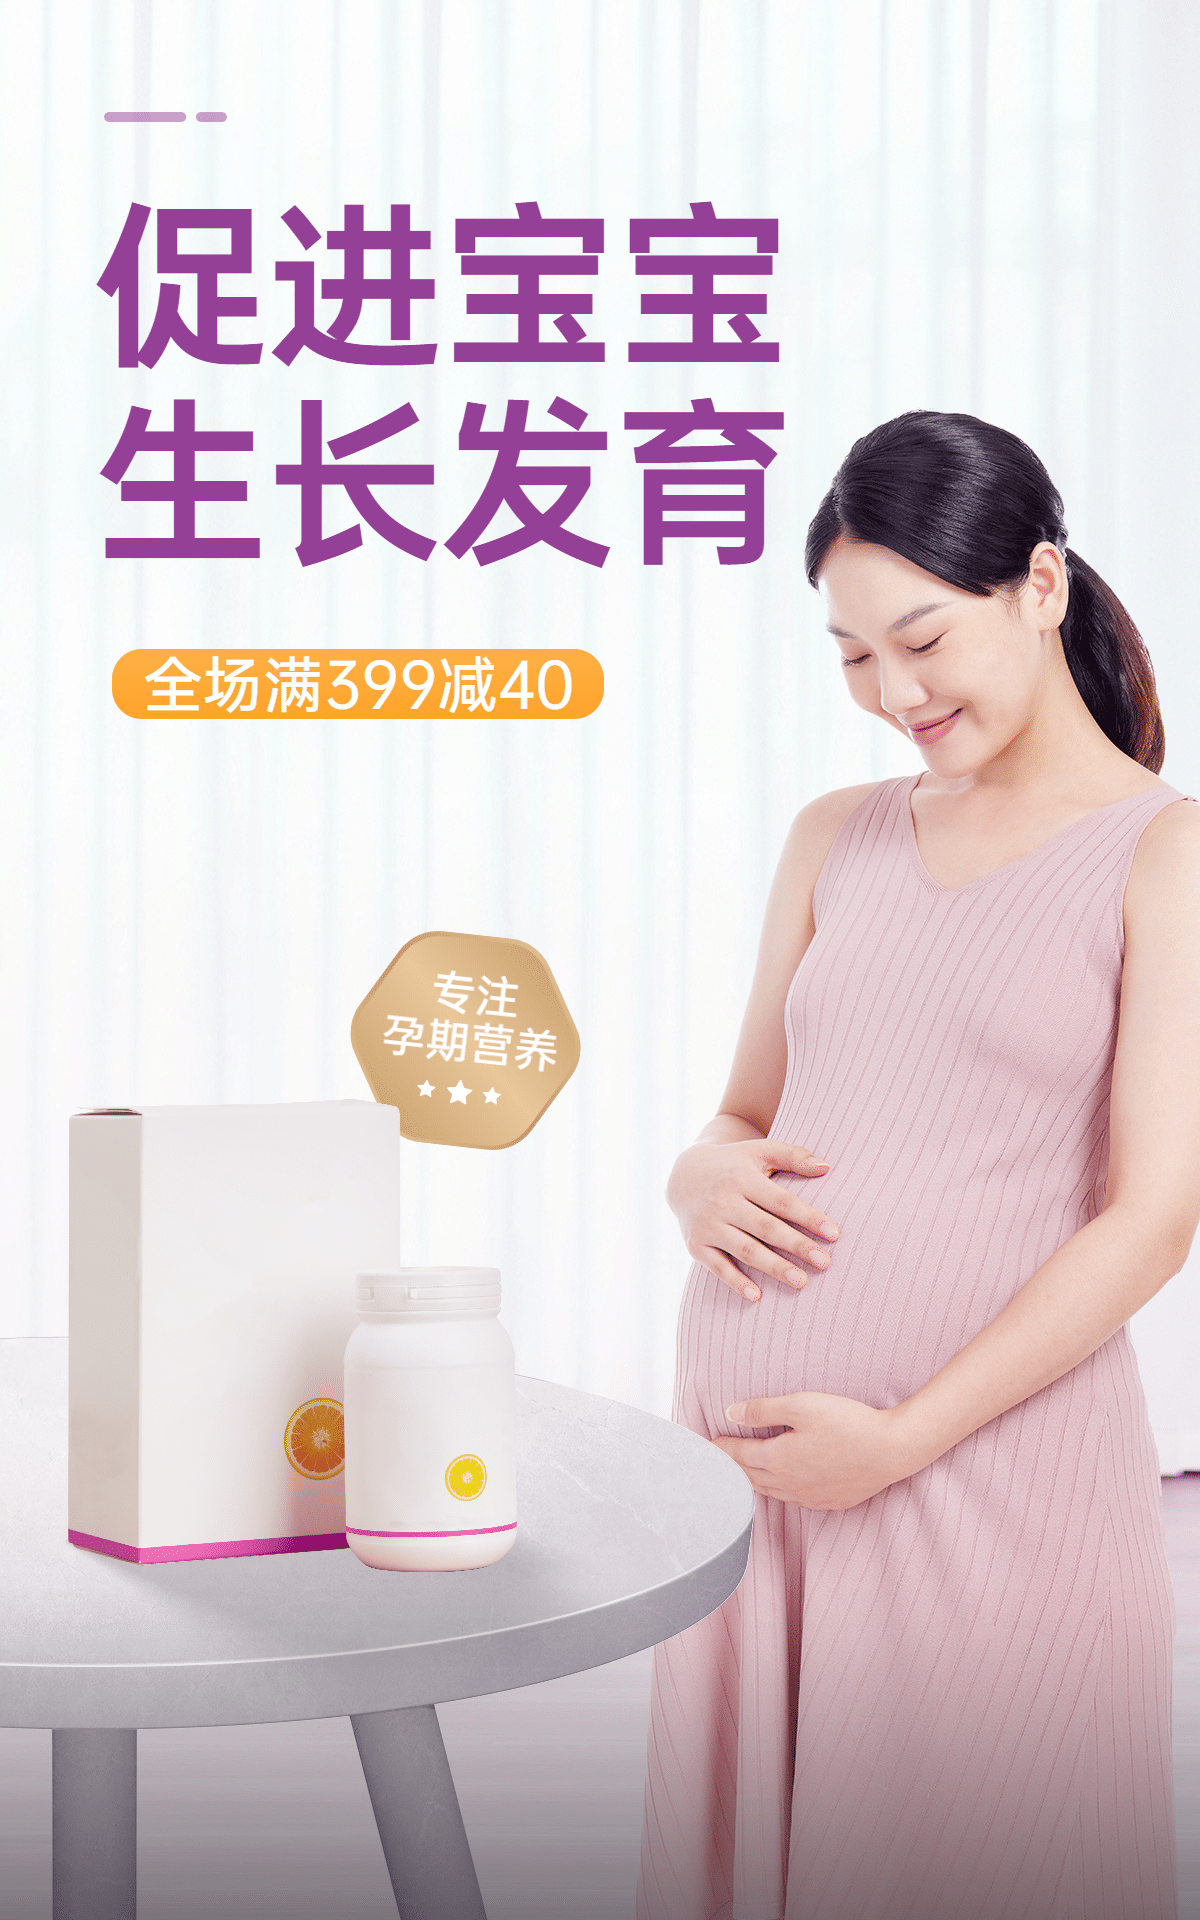 简约母婴孕期食品海报